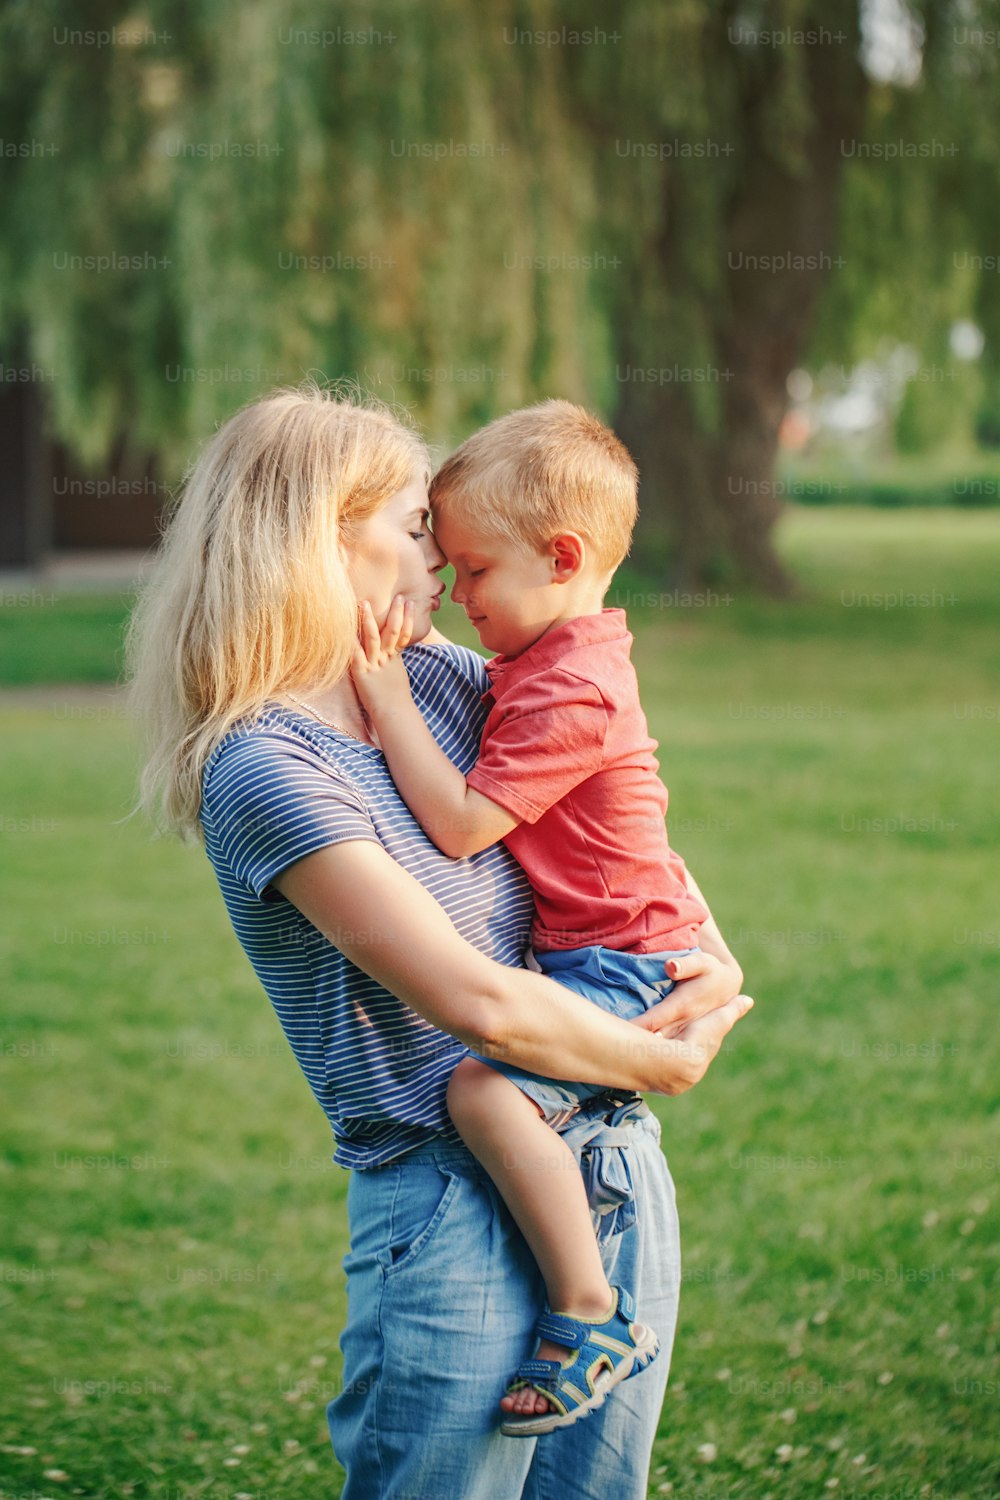 젊은 백인 어머니는 소년 유아 아들을 손에 들고 팔에 안고 있습니다. 여름날 공원에서 야외에서 아이를 껴안고 키스하는 가족 엄마. 행복 한 정통 가족 어린 시절 생활 방식.